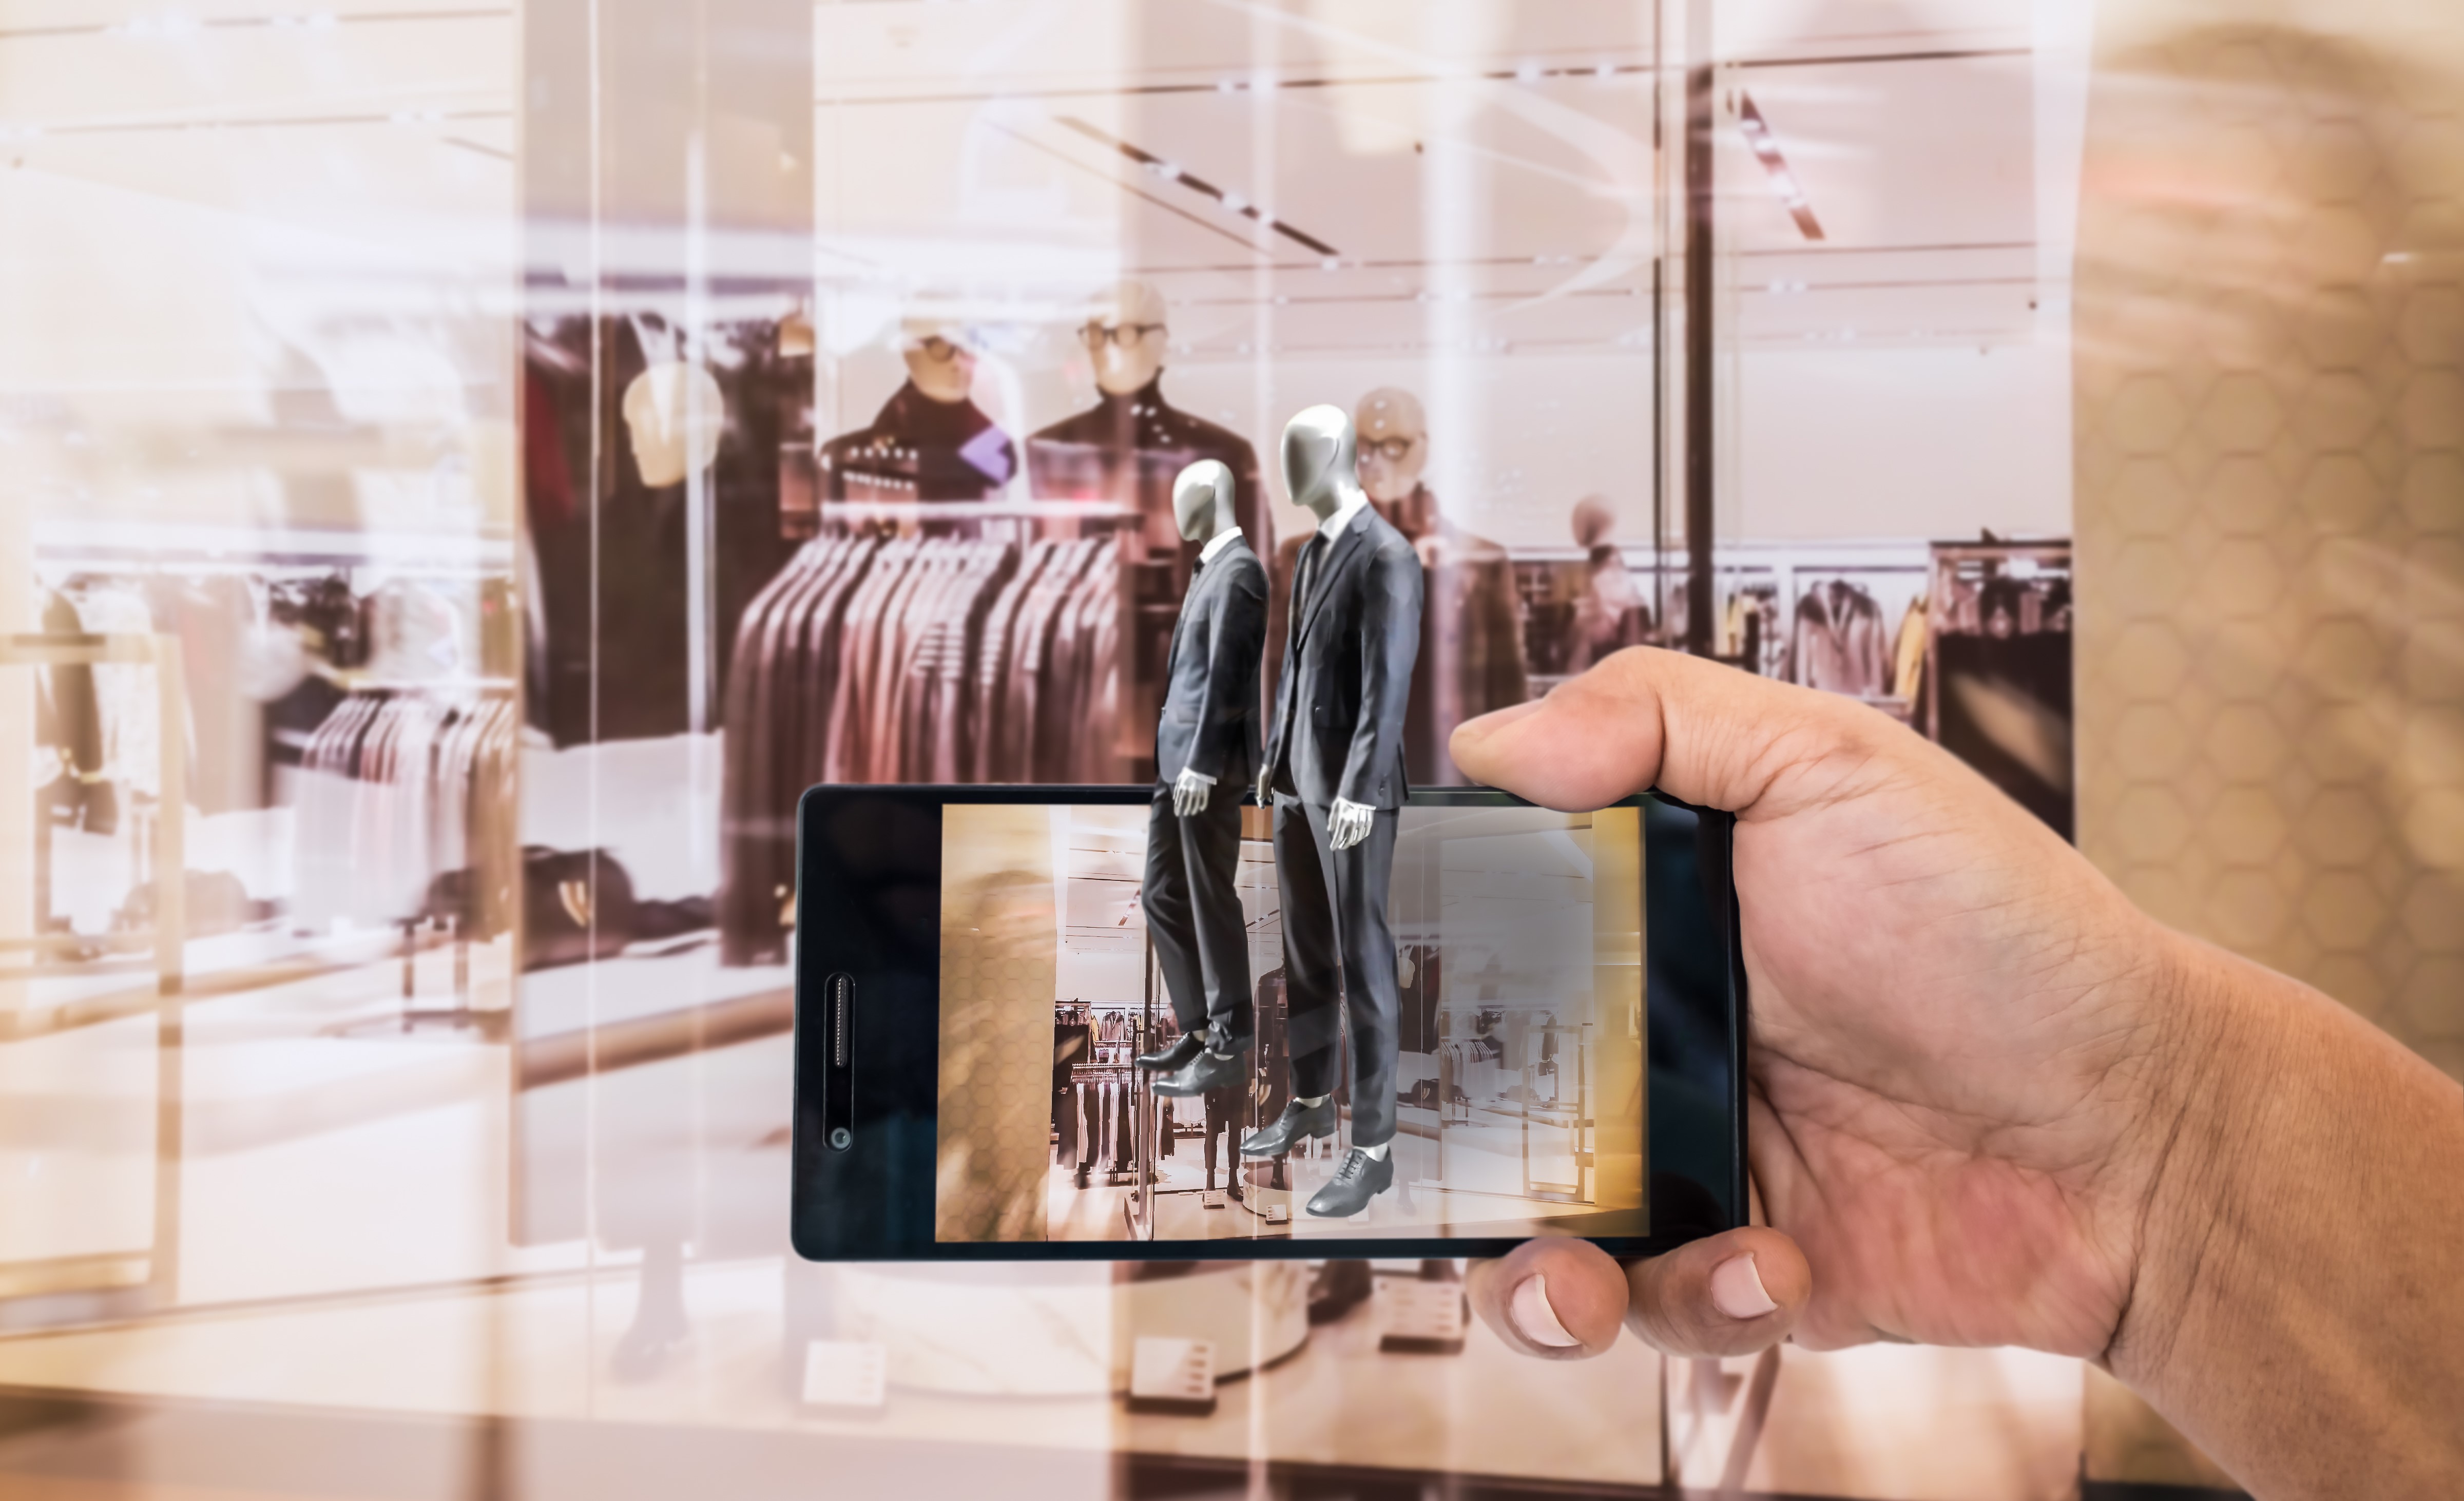 手持手机对着橱窗拍照，橱窗里展示着穿着时尚服装的人体模特，手机屏幕显示拍摄画面，背景为店内其他服饰。